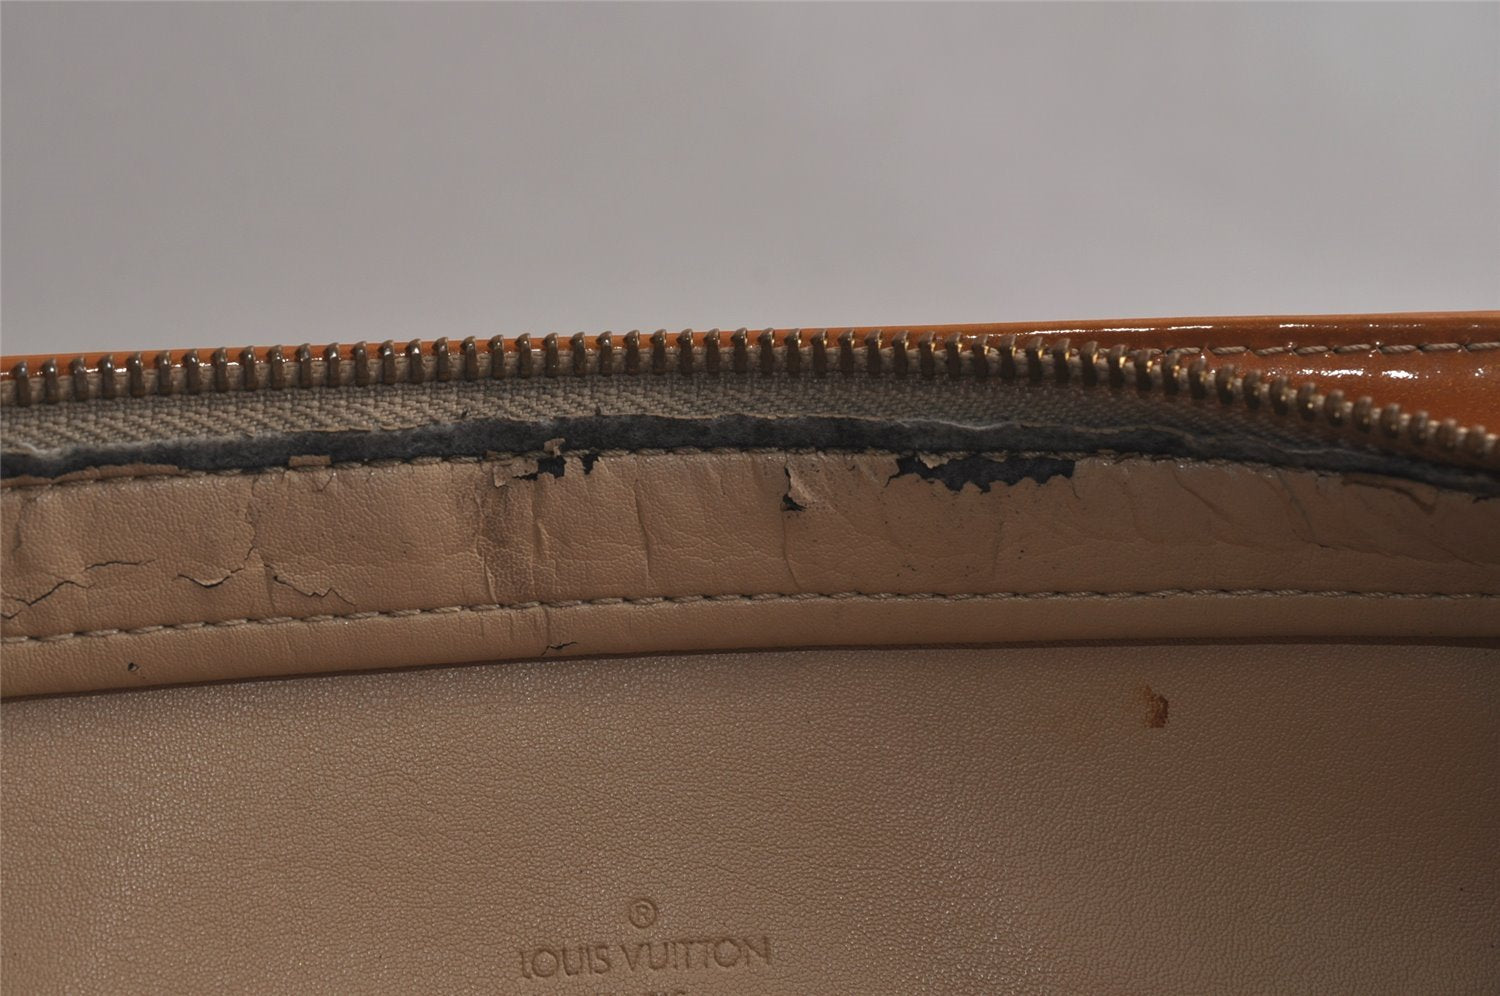 Authentic Louis Vuitton Vernis Houston Shoulder Hand Bag Yellow M91004 LV 0307K